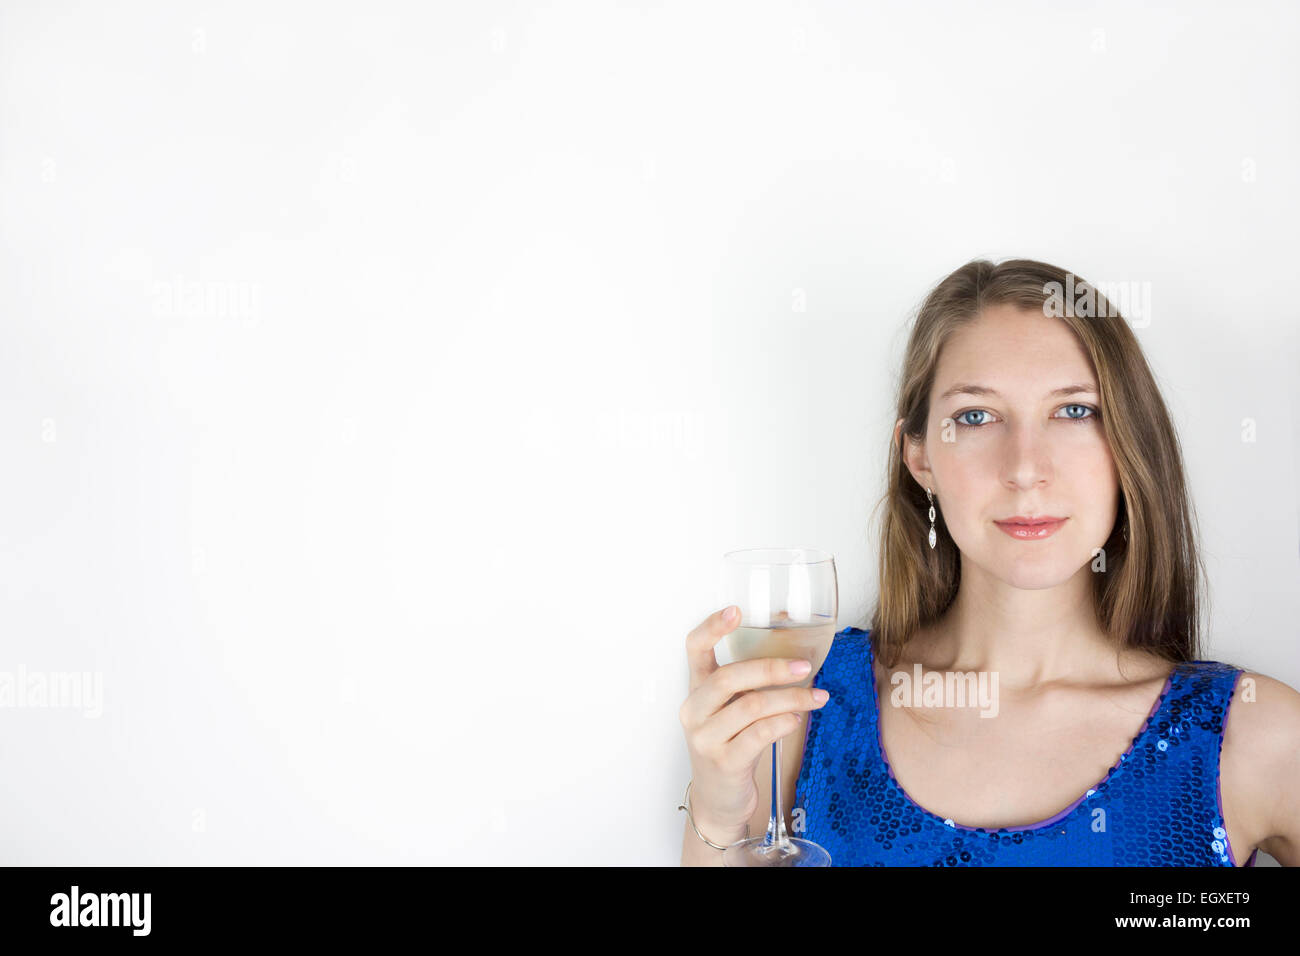 Piuttosto giovane donna che indossa blu abito di paillette e tenendo un bicchiere di vino bianco Foto Stock